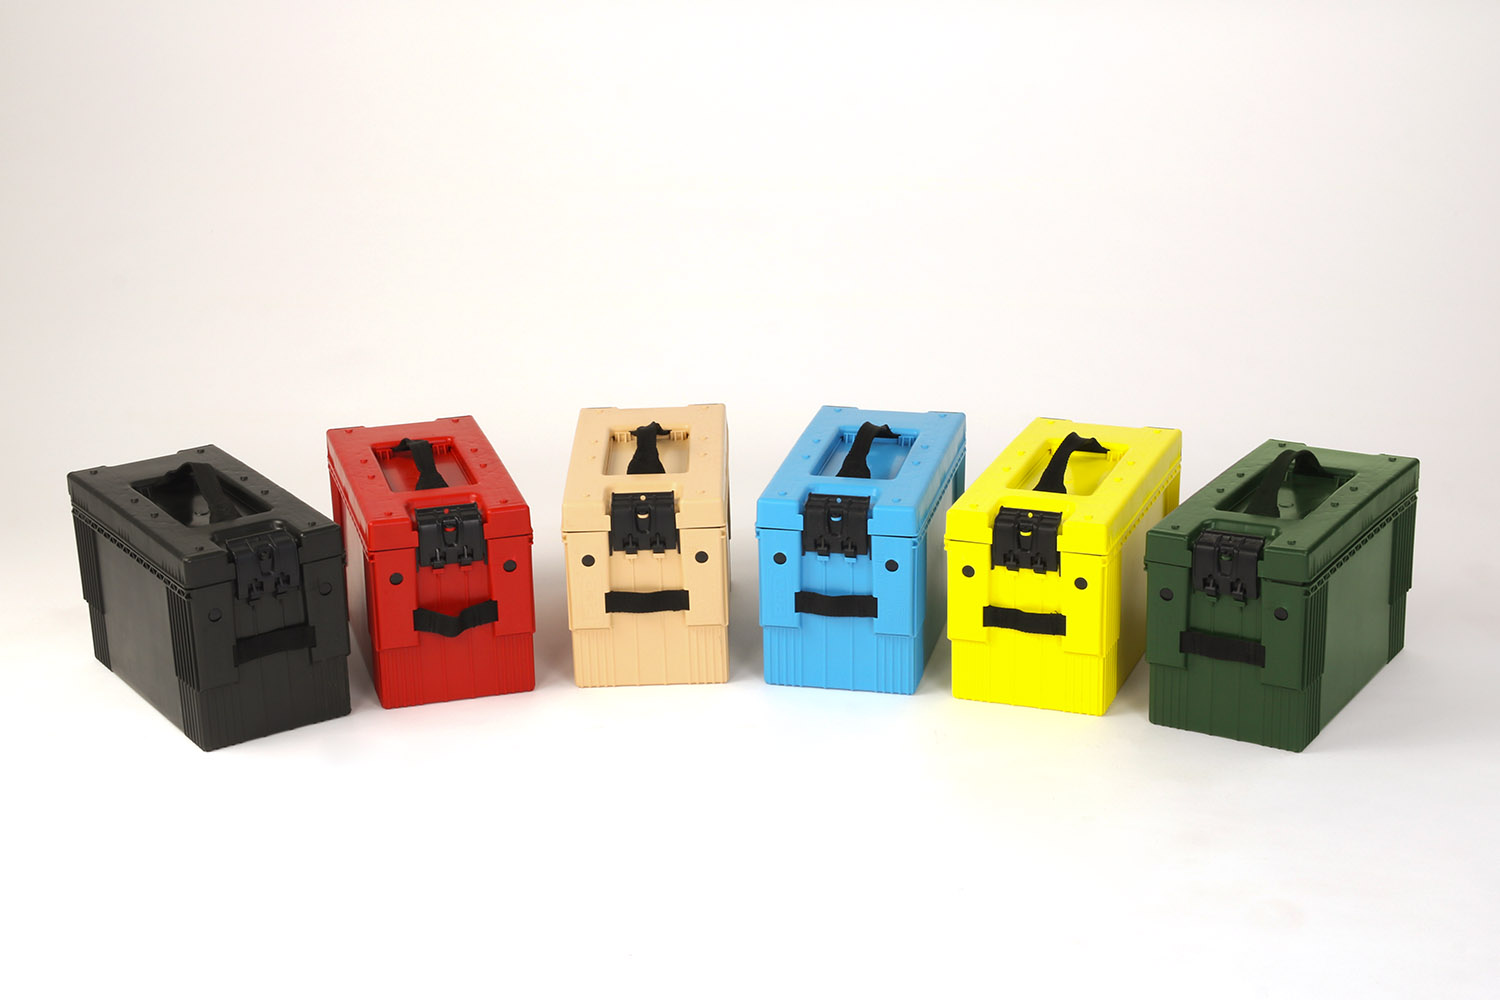 ▷ Multifunktionale Transportbox in verschiedenen Farben - hier erhältlich!